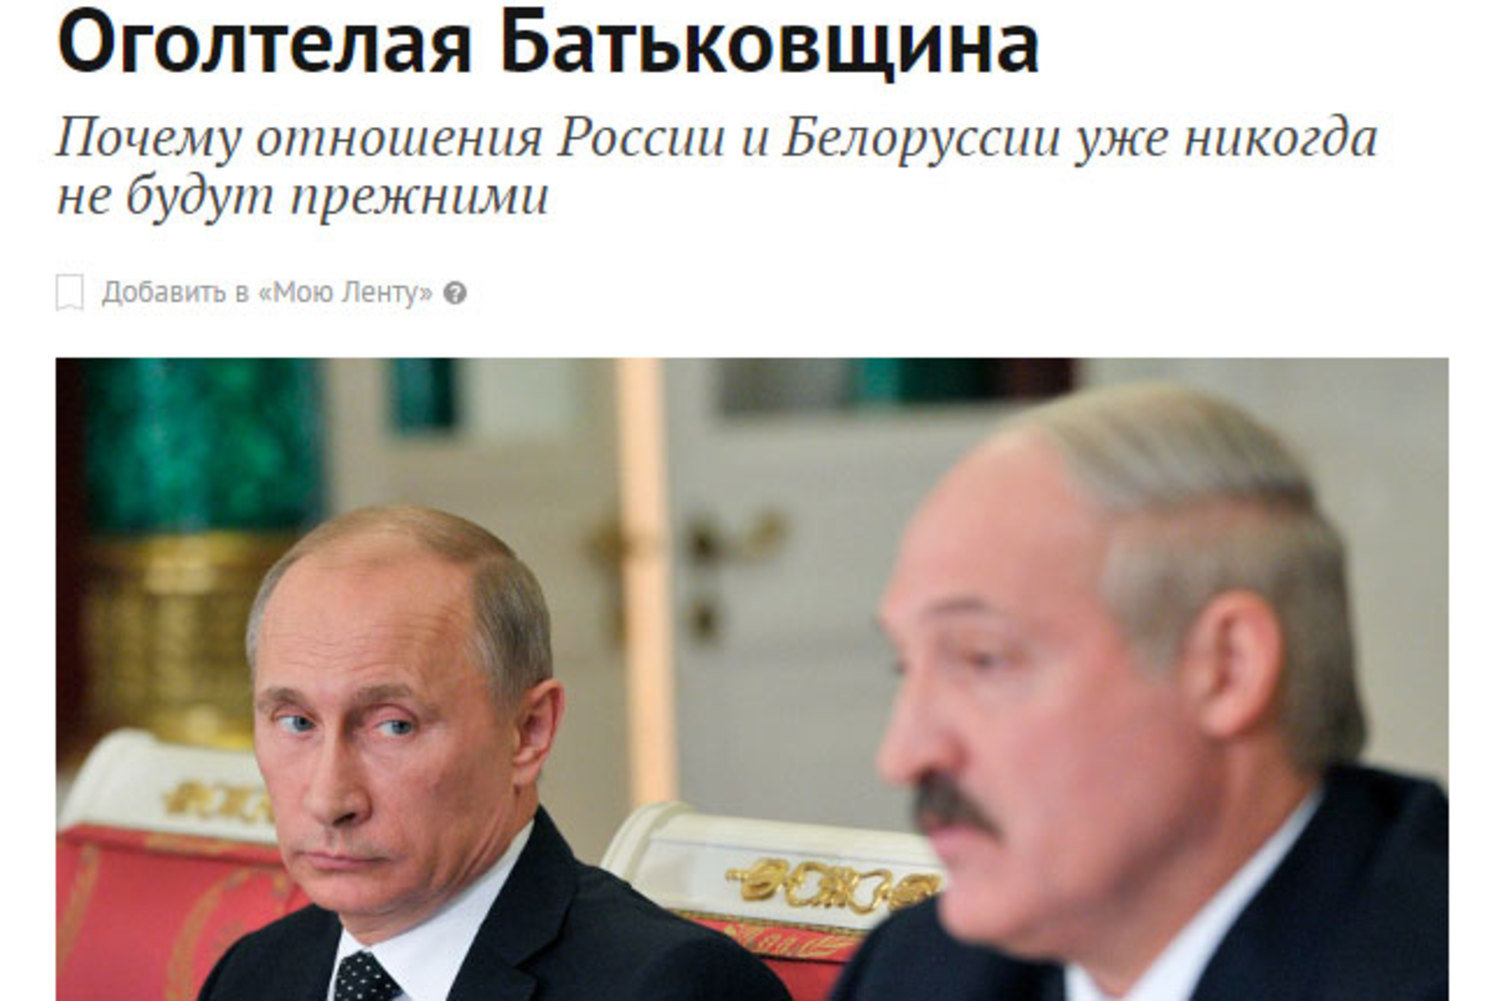 Официальный Минск готовится к противодействию информационному давлению со стороны Кремля